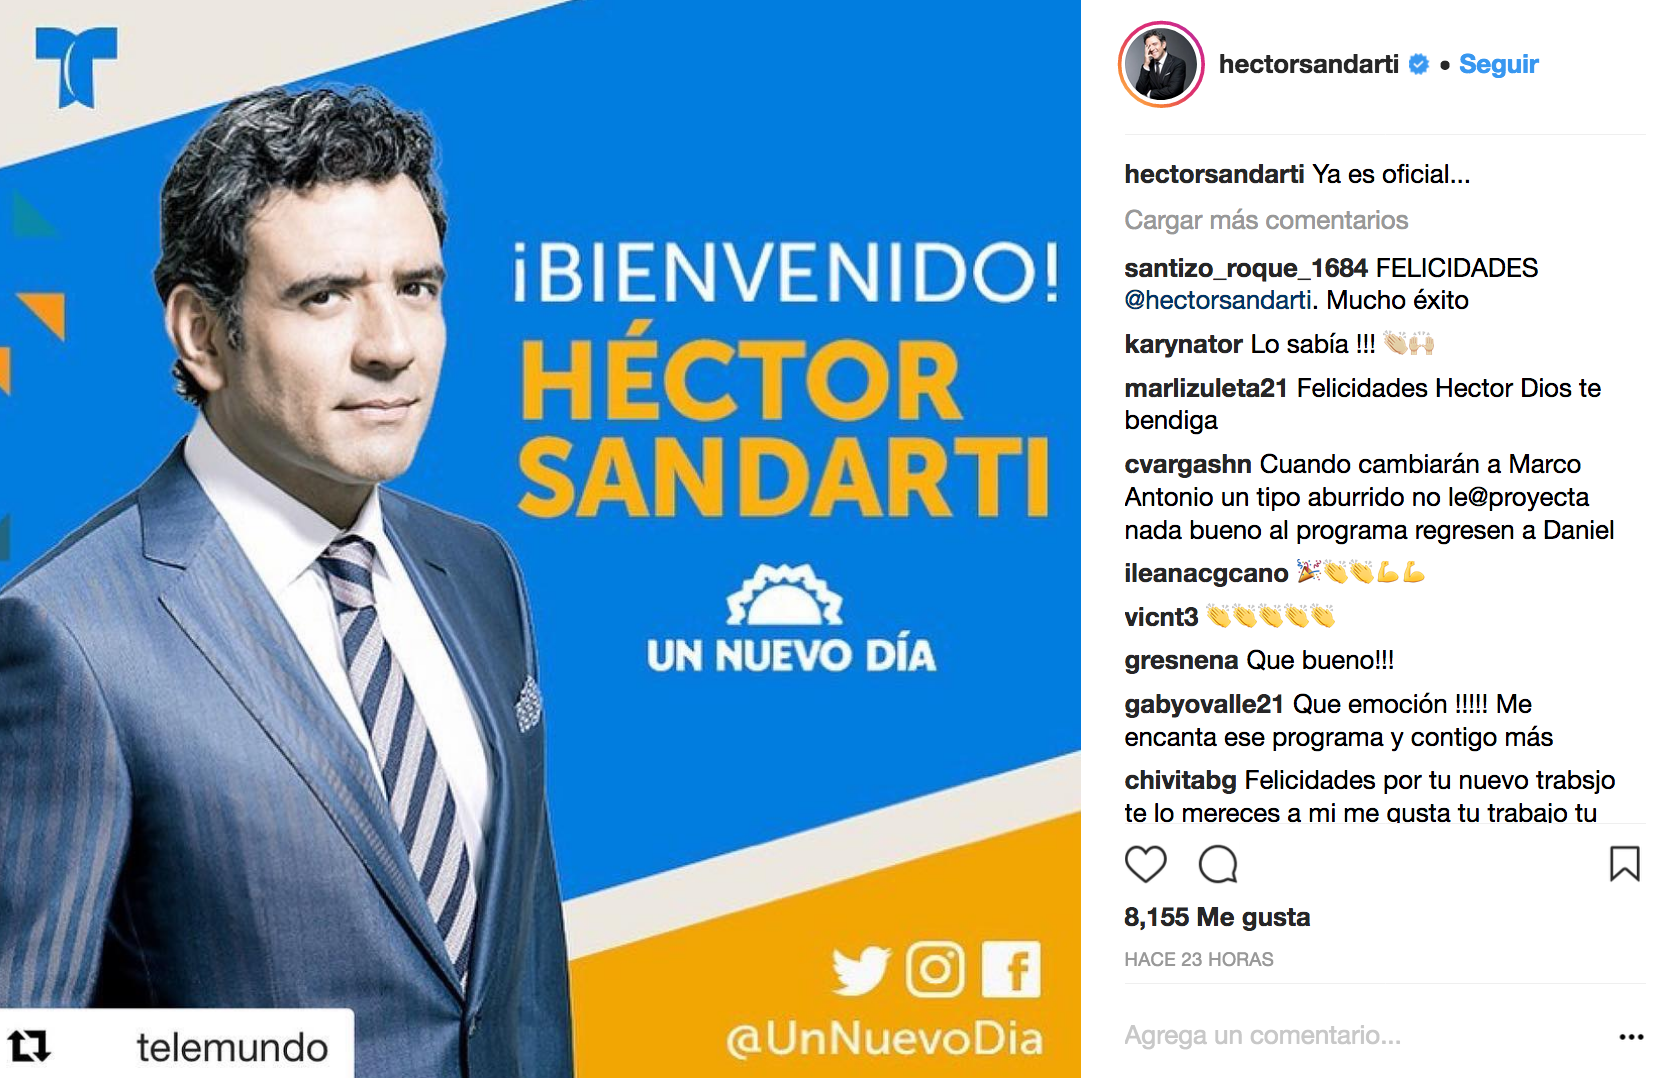 Héctor Sandarti soprendió a sus seguidores con un emotivo mensaje recientemente, ahora sorprende anunciando el nuevo trabajo que tendrá.